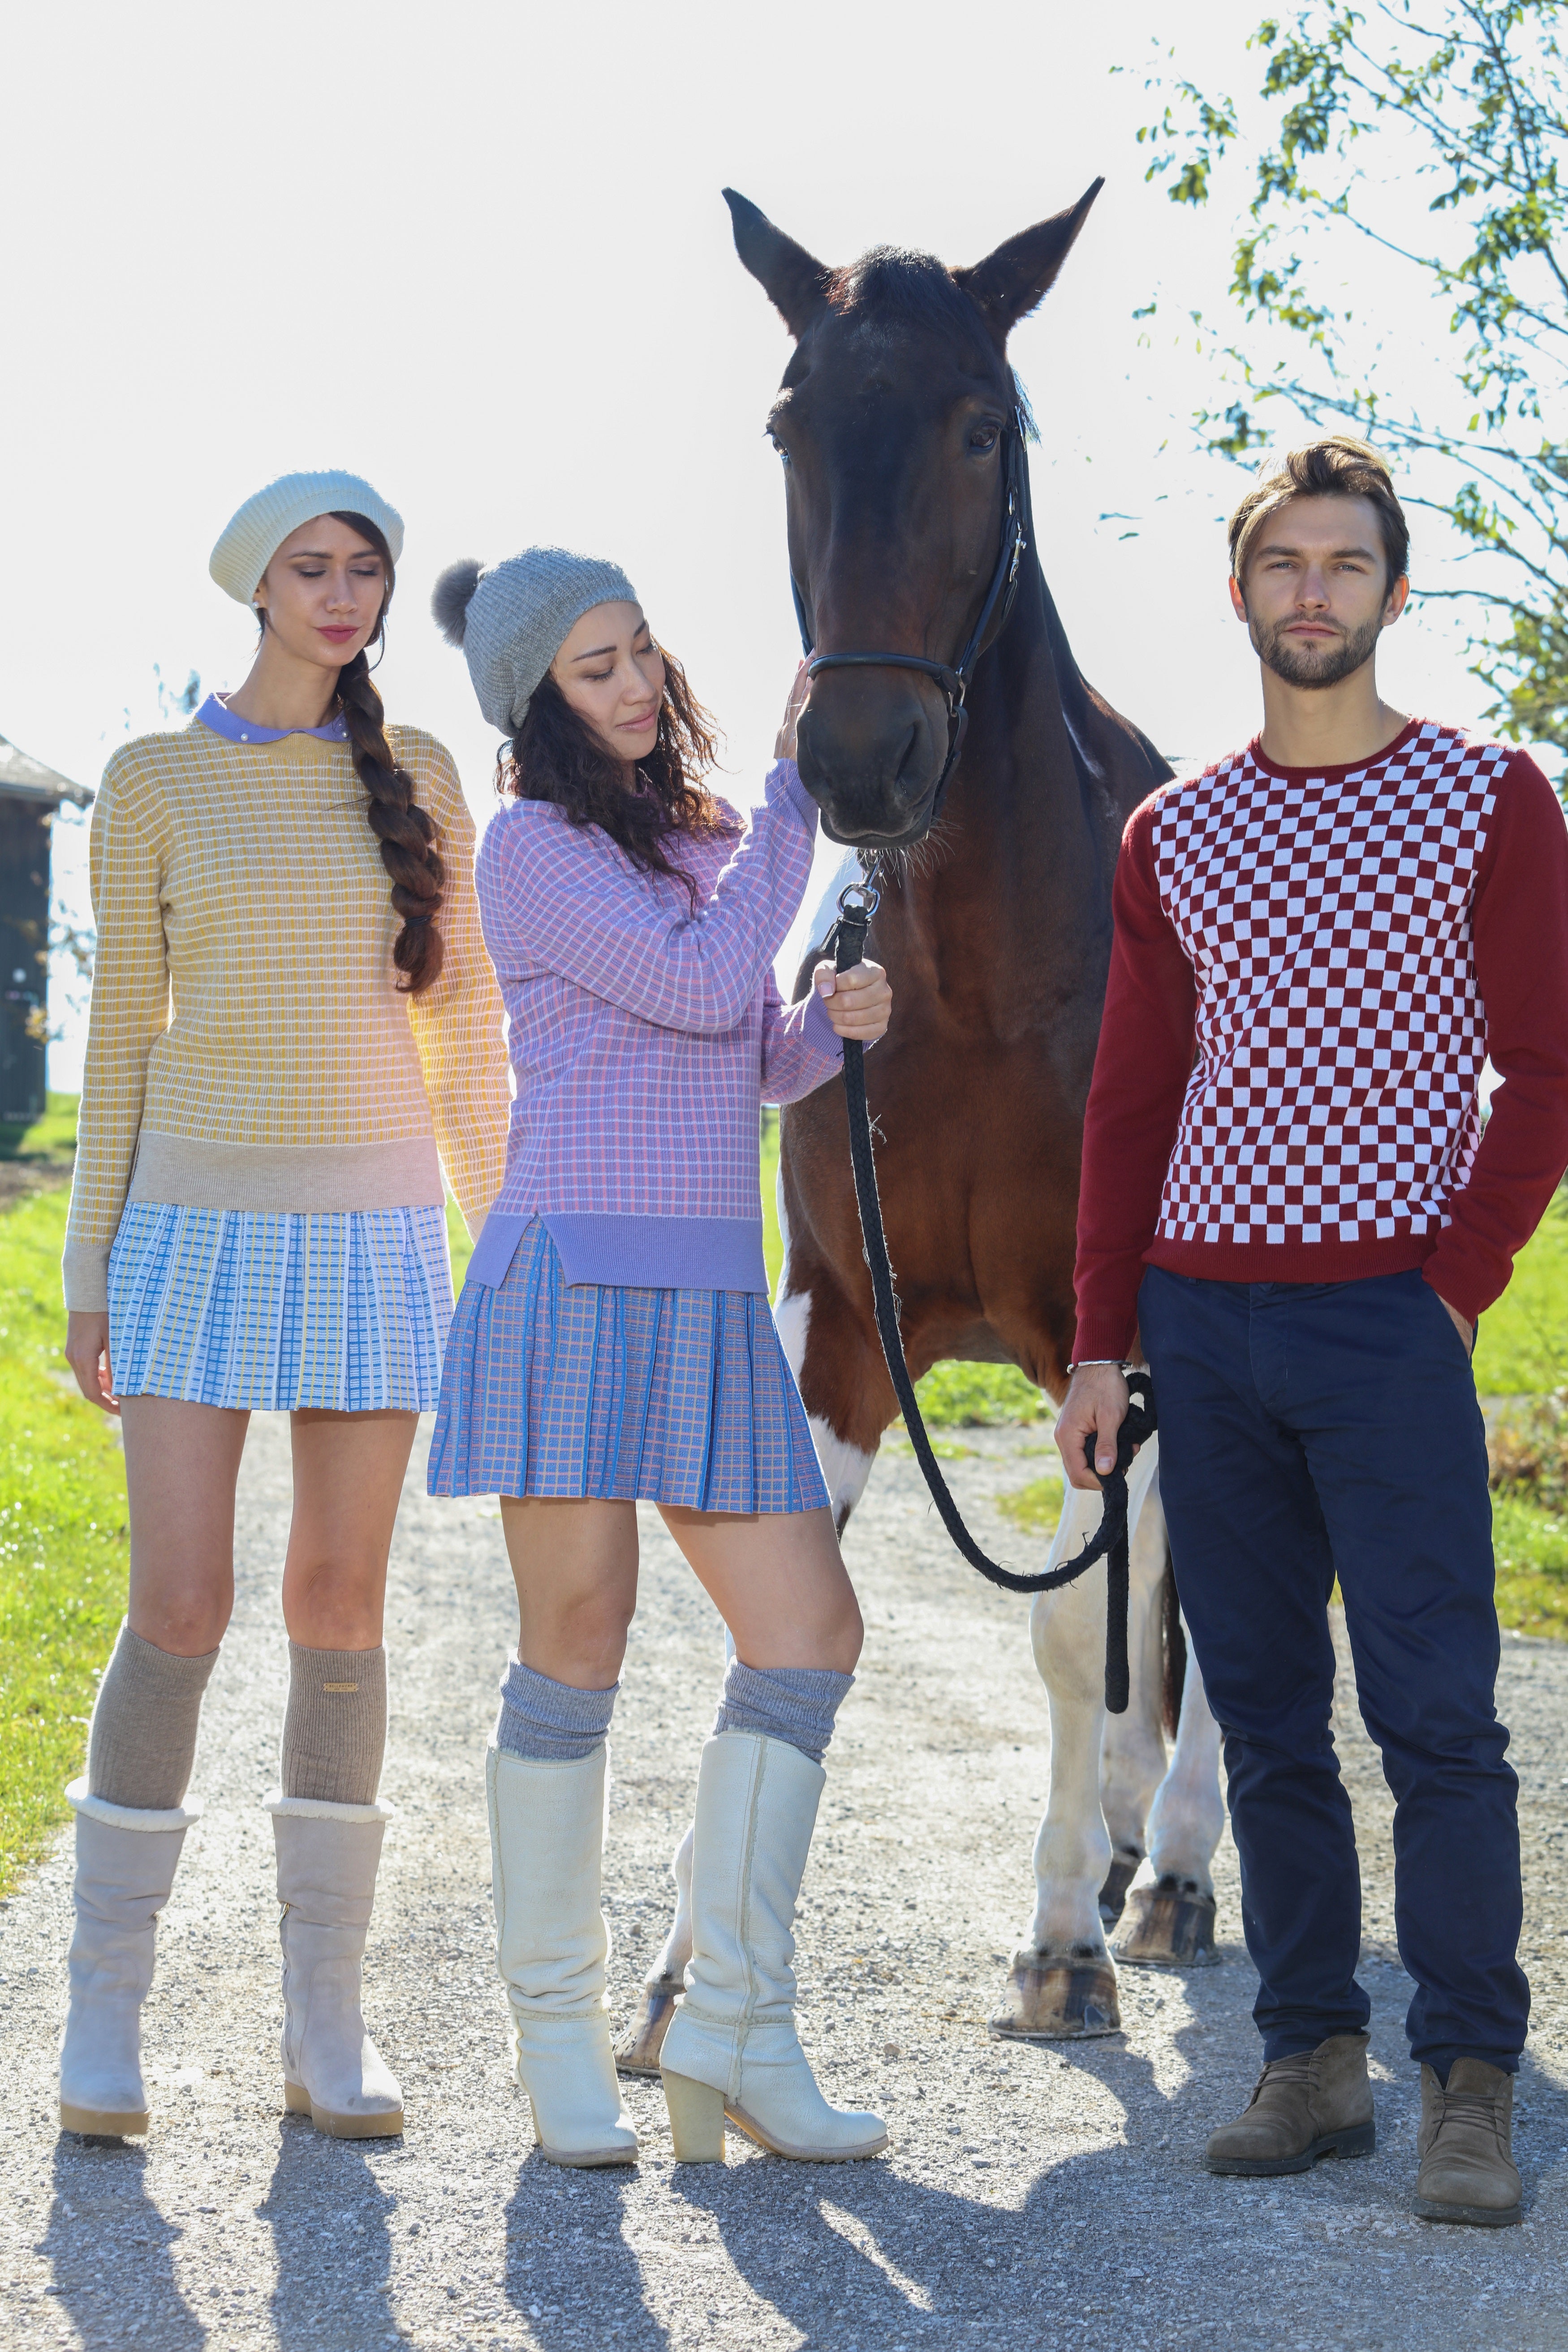 Merino Wool | Women Merino Sweater | Pullover Sweater | Winter Pullover Sweater| Bellemere New York